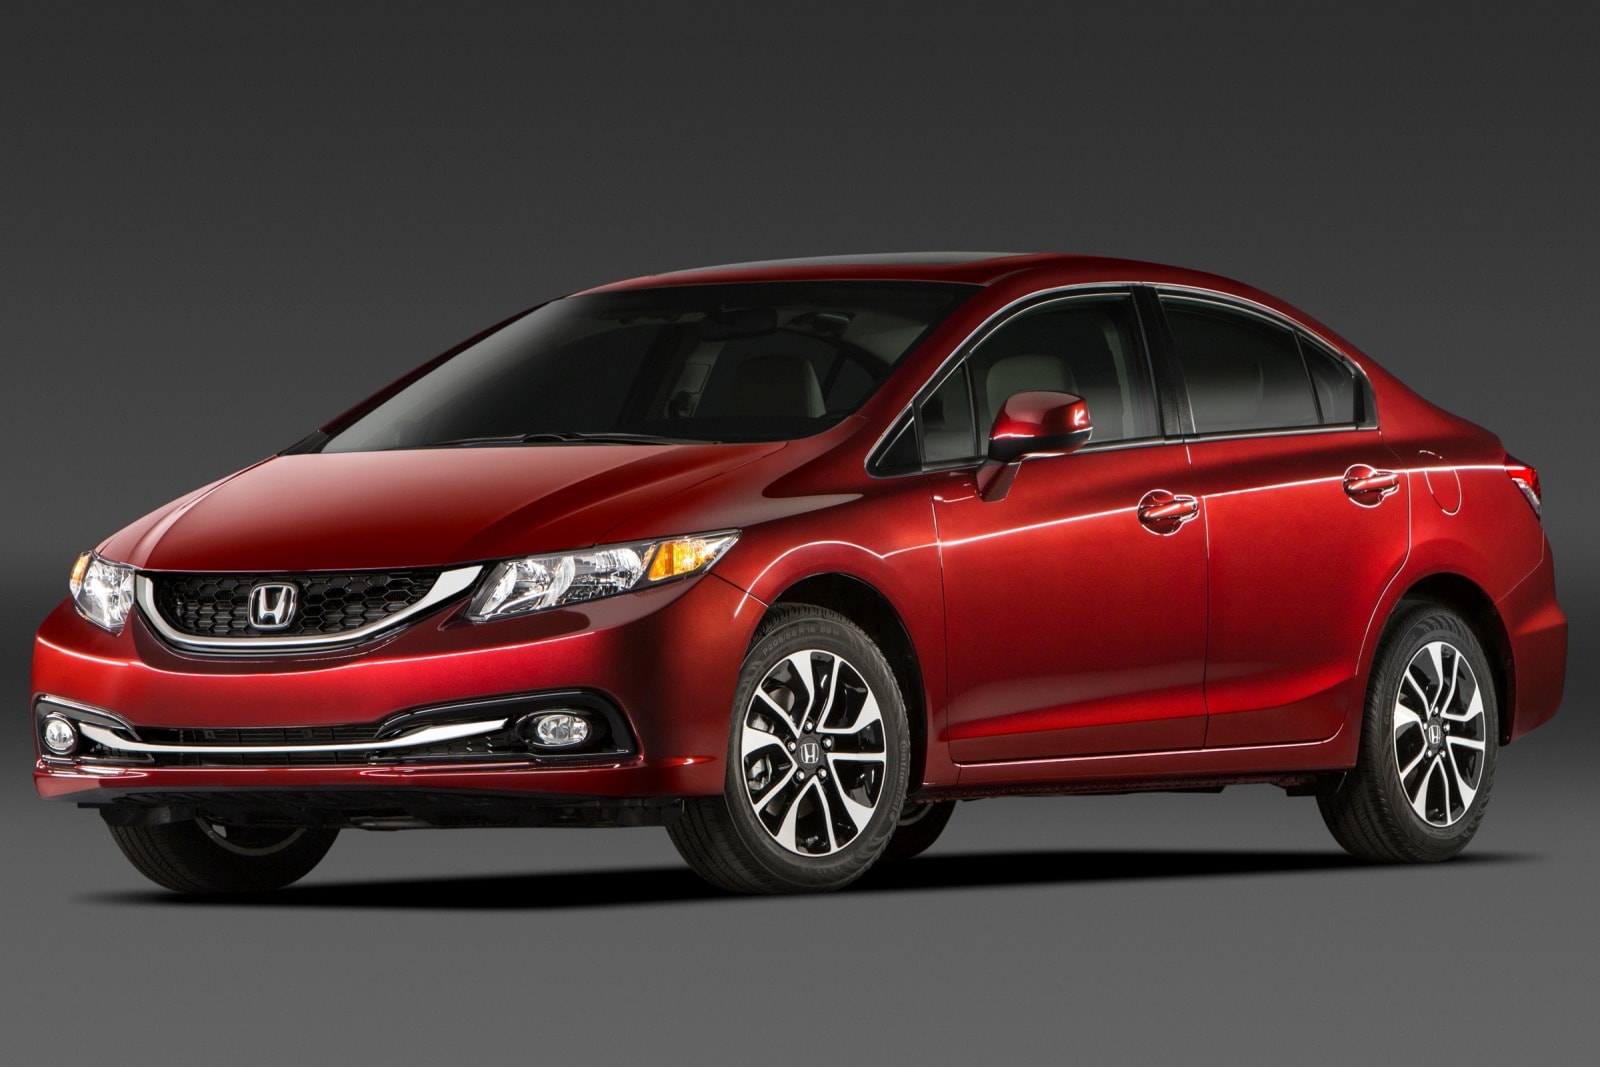 2013 Honda Civic Review & Ratings | Edmunds